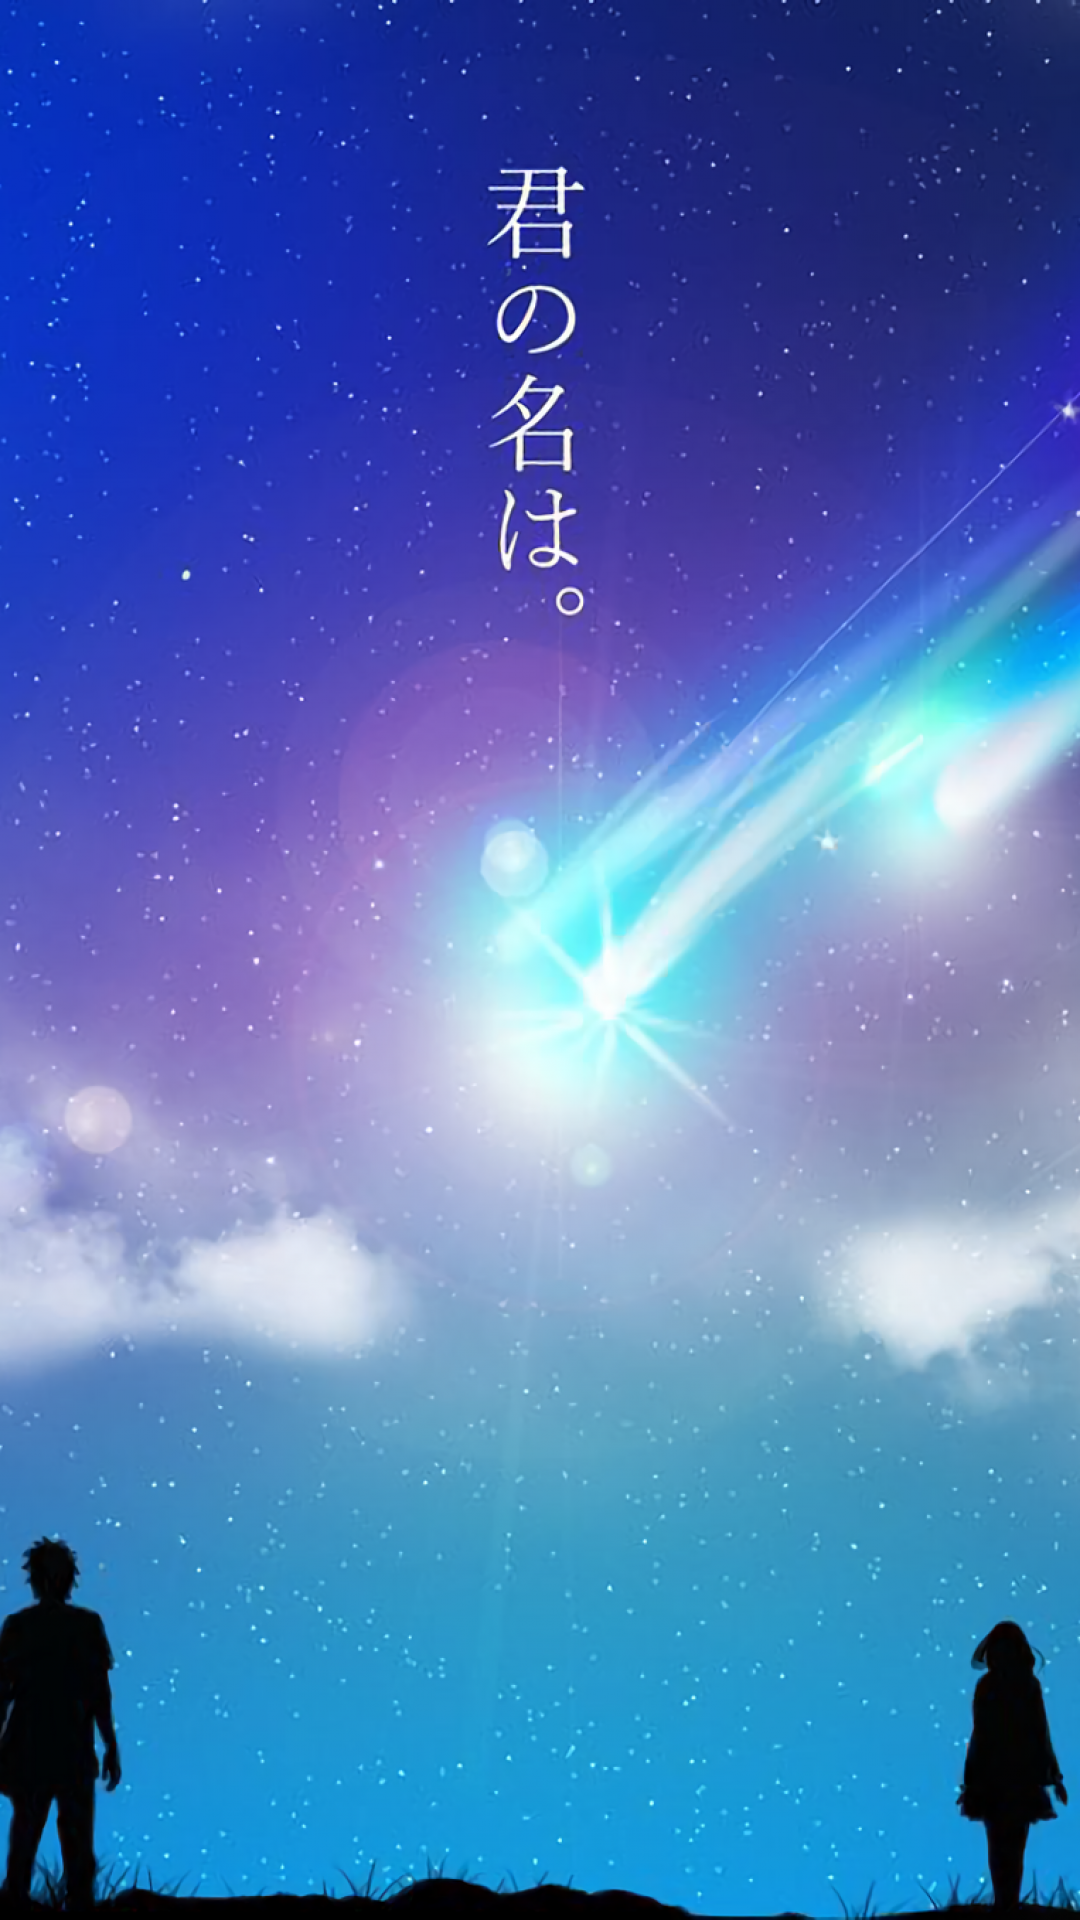 Download 1080x1920 Kimi No Na Wa, Your Name, Scenic, Stars, Sky